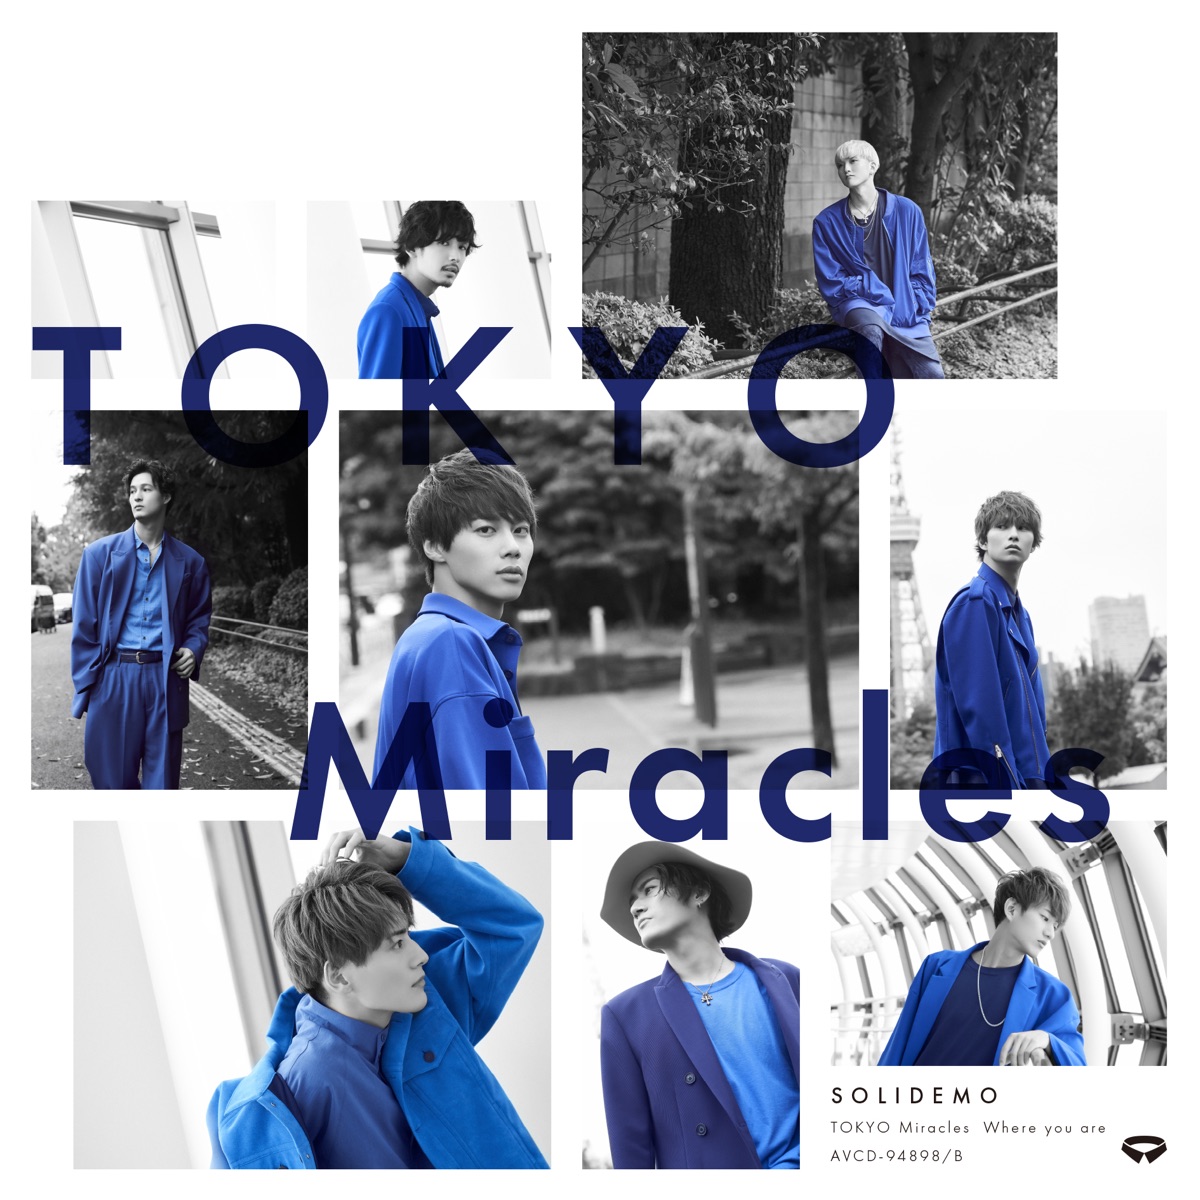 『SOLIDEMO - TOKYO Miracles』収録の『TOKYO Miracles』ジャケット